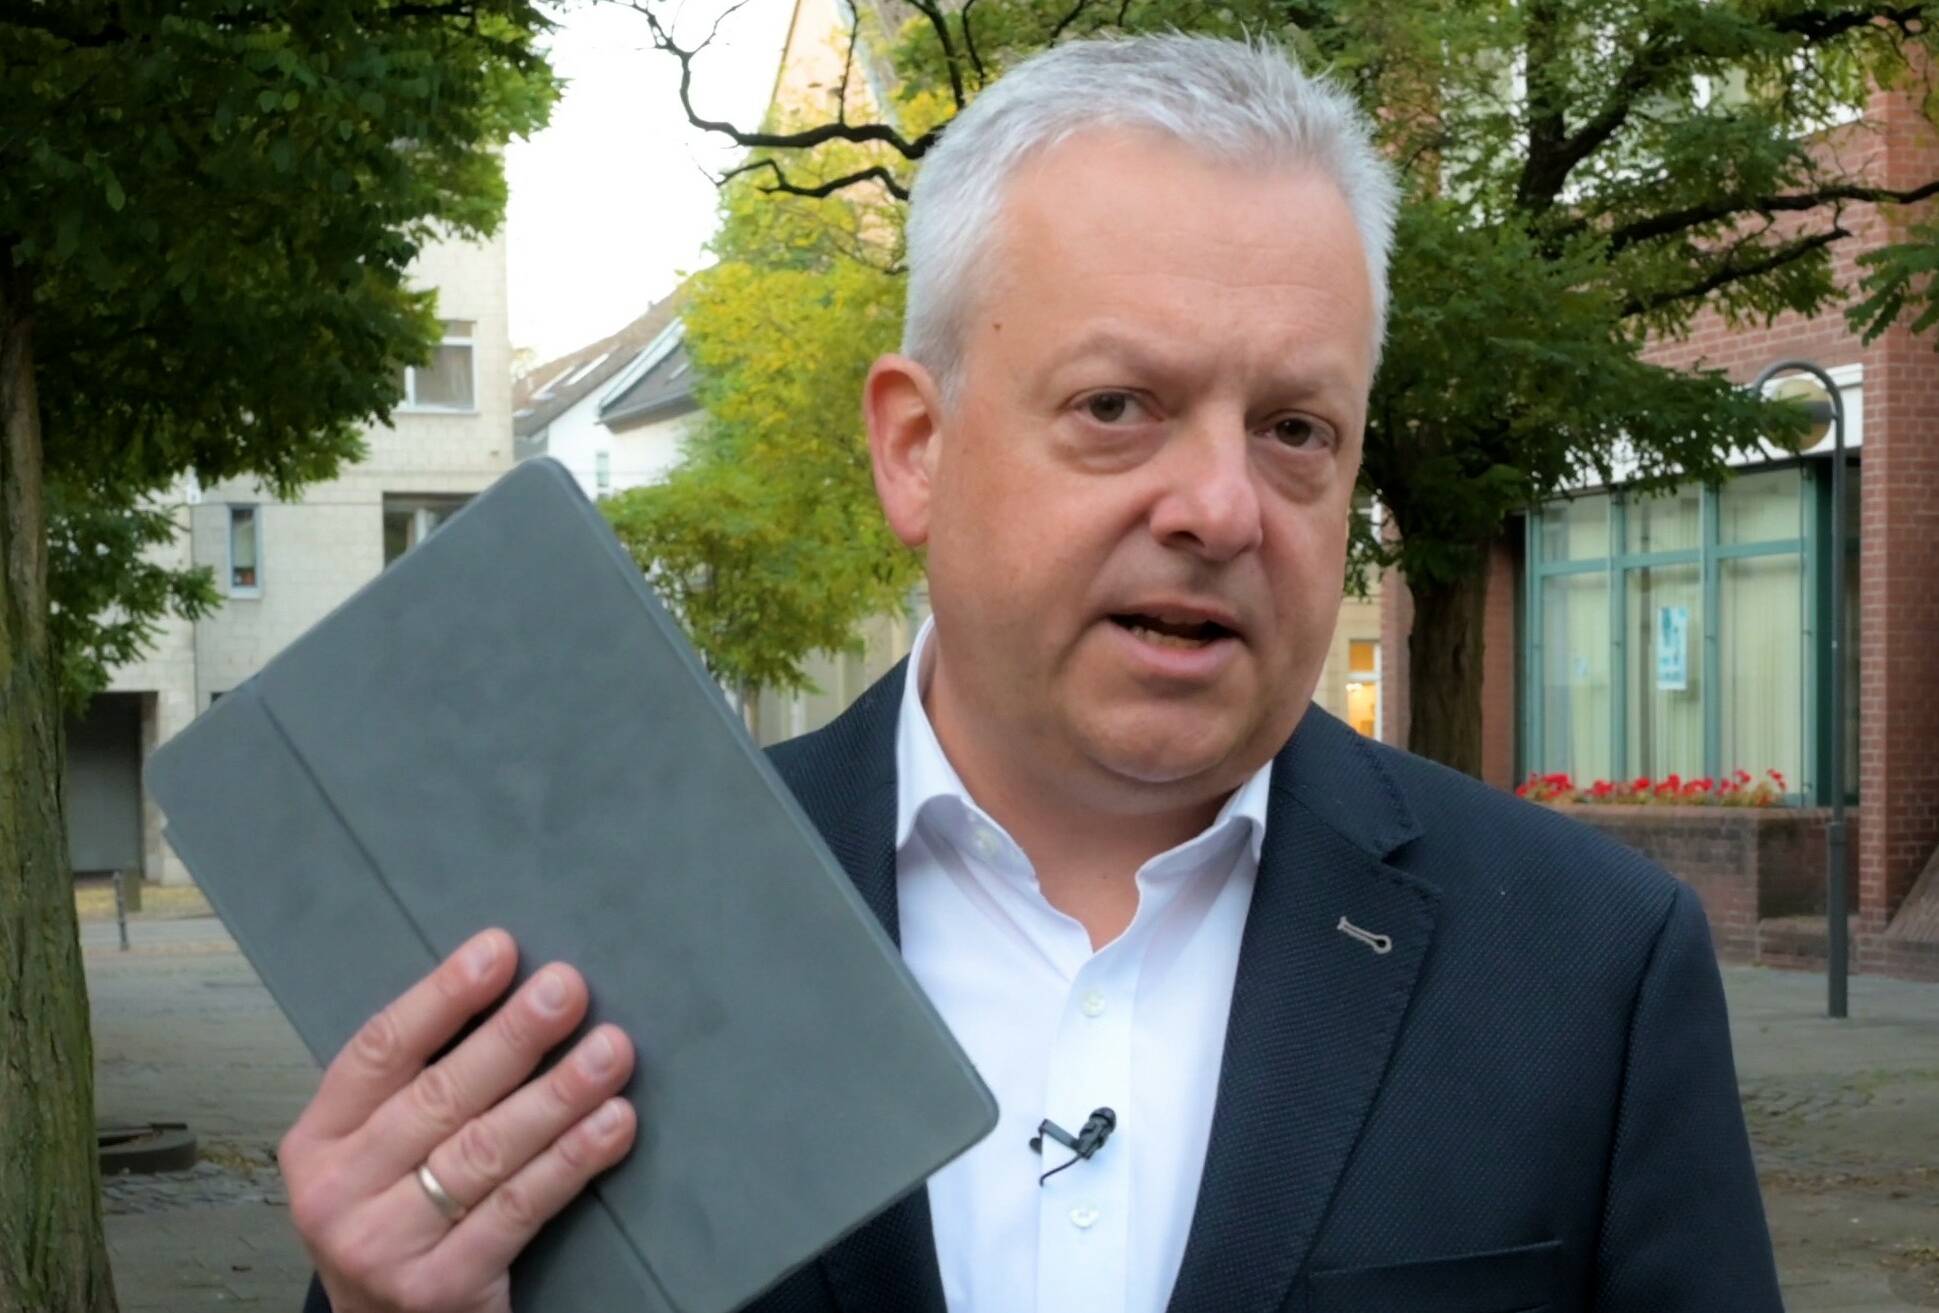  Wo bleiben die Zuschüsse für Schüler-Tablets? Arno Jansen übt harsche Kritik an der Landesregierung.  